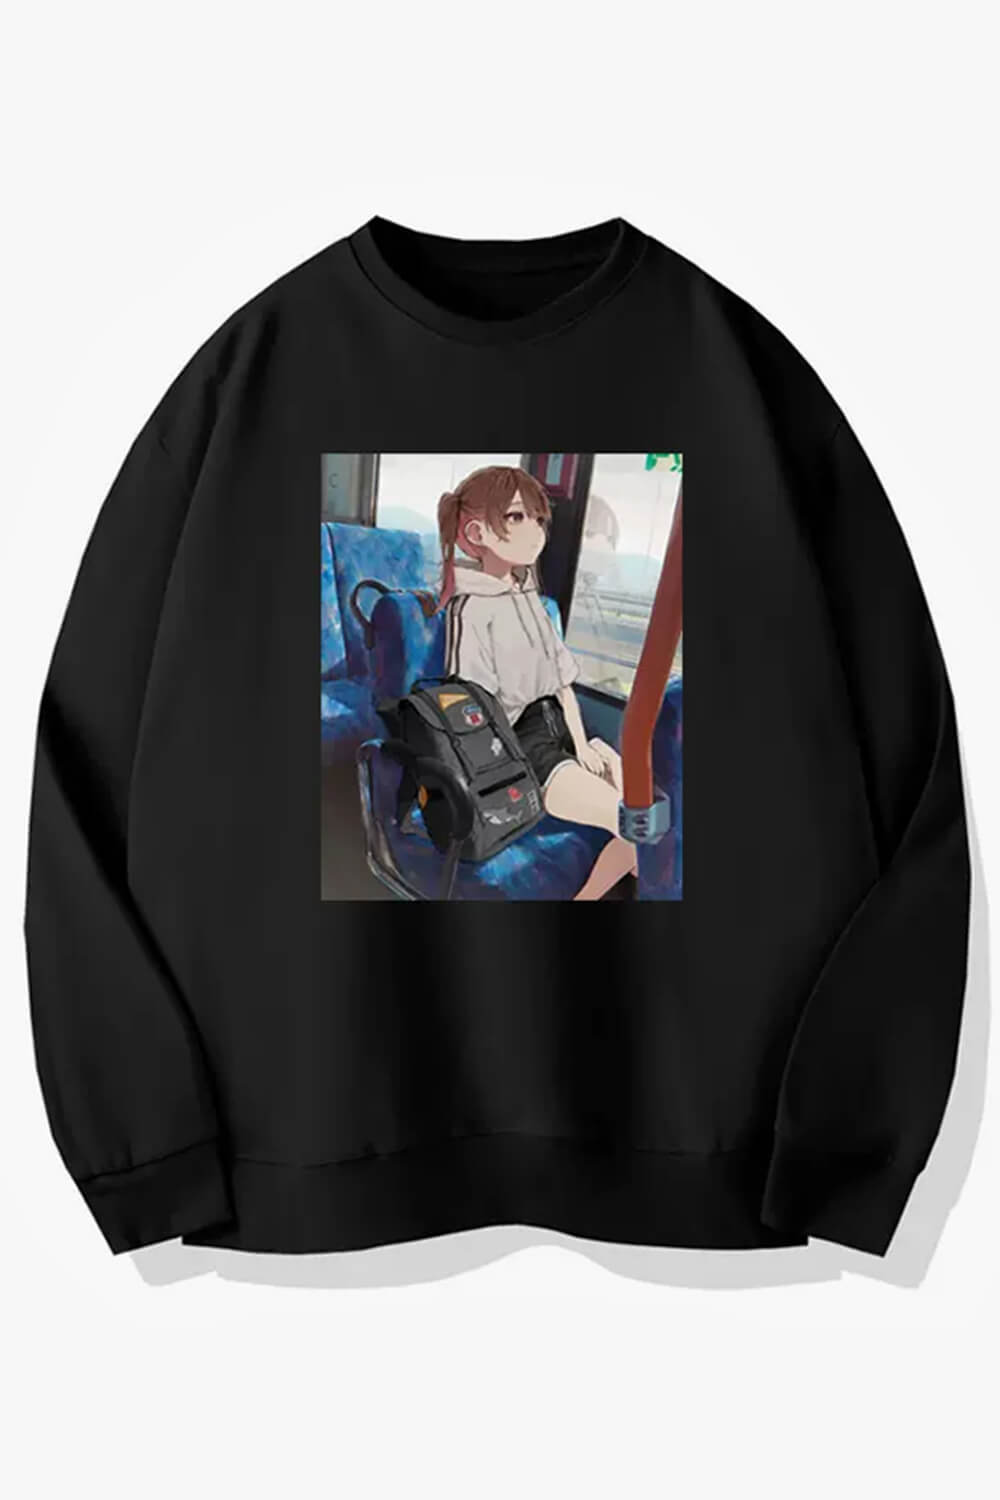 Anime Girl IRL Traveling on a Bus Sweatshirt